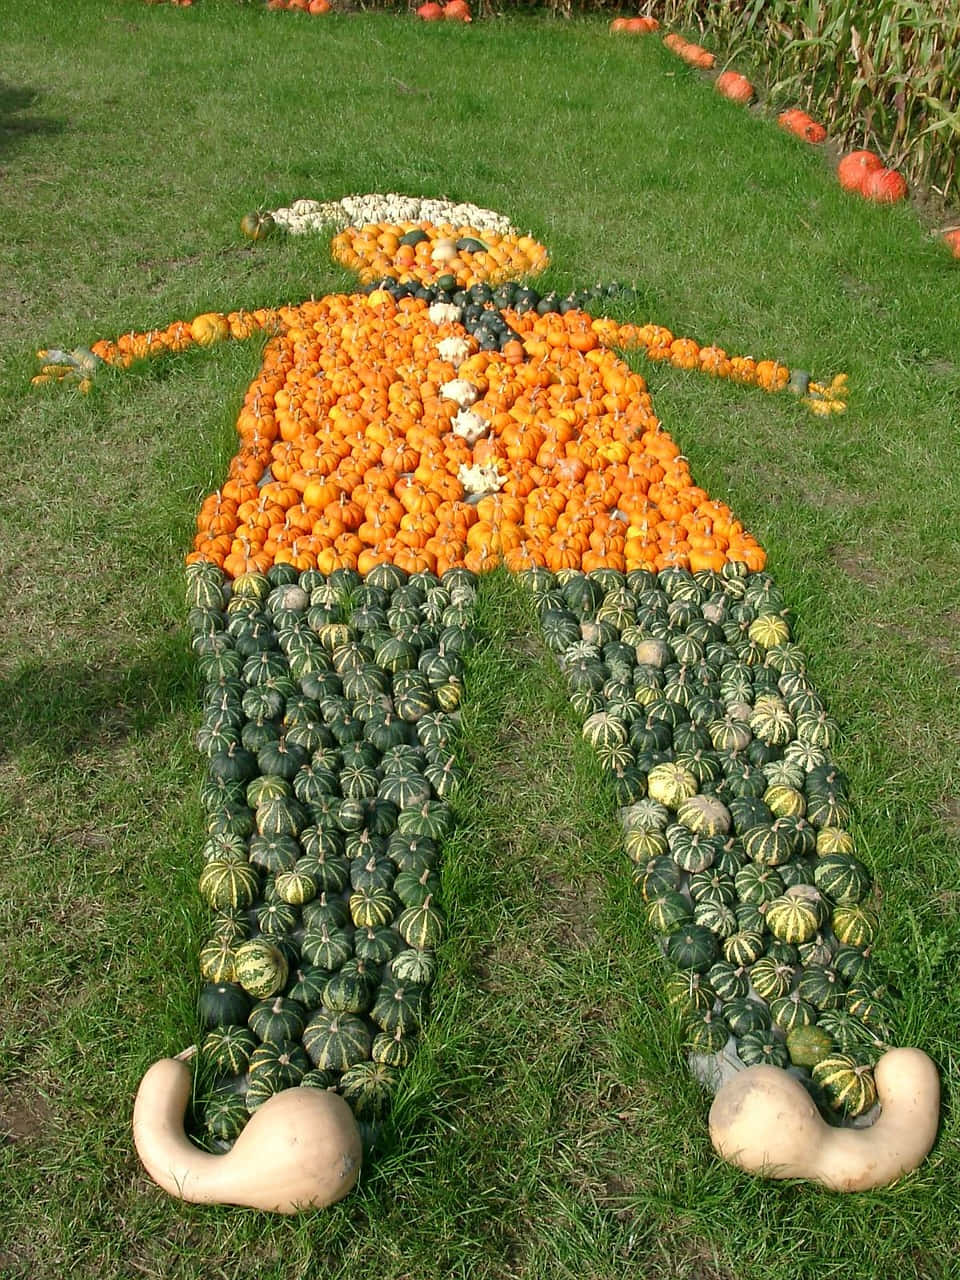 Pumpkin Man At A Pumpkin Patch Picture